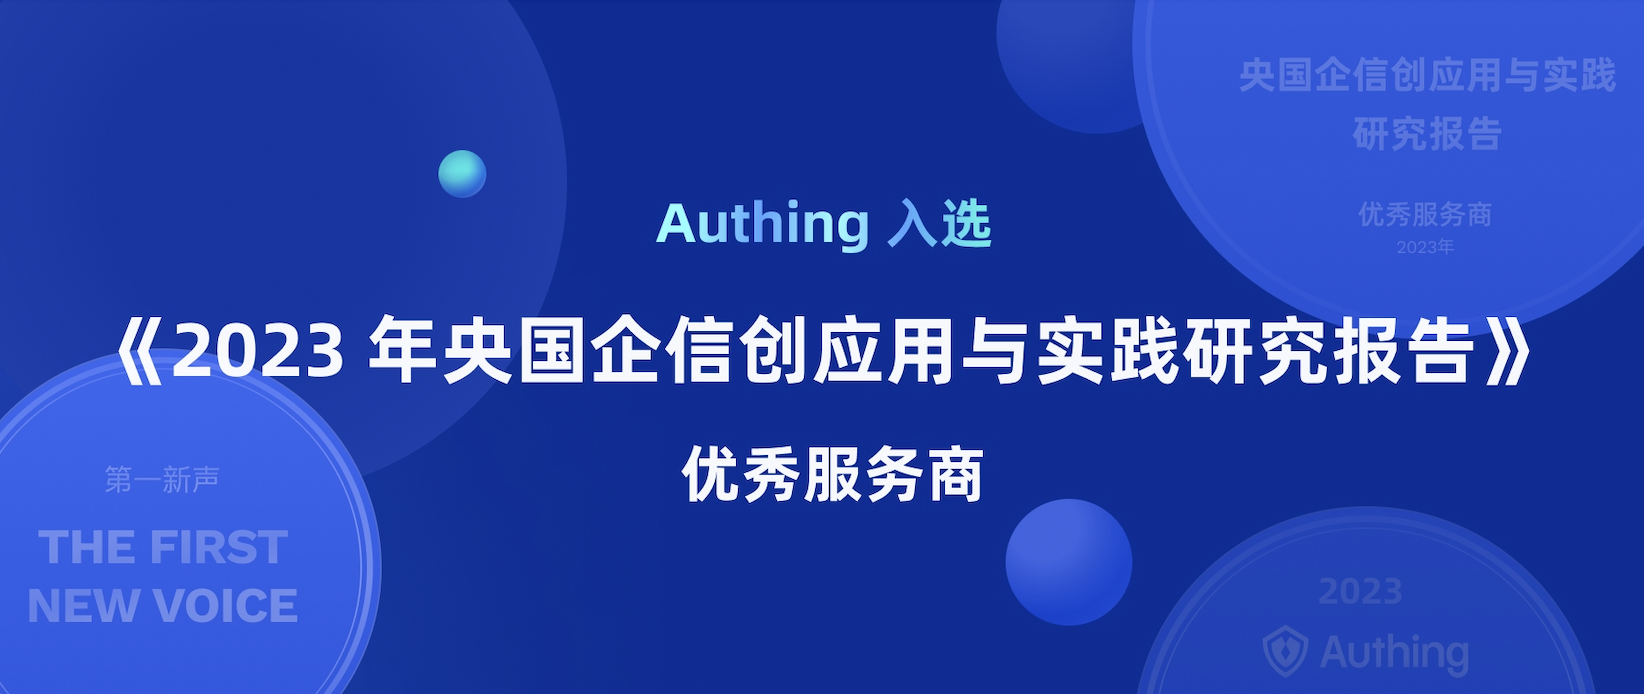 Authing 入选《 2023 年央国企信创应用与实践研究报告》优秀服务商